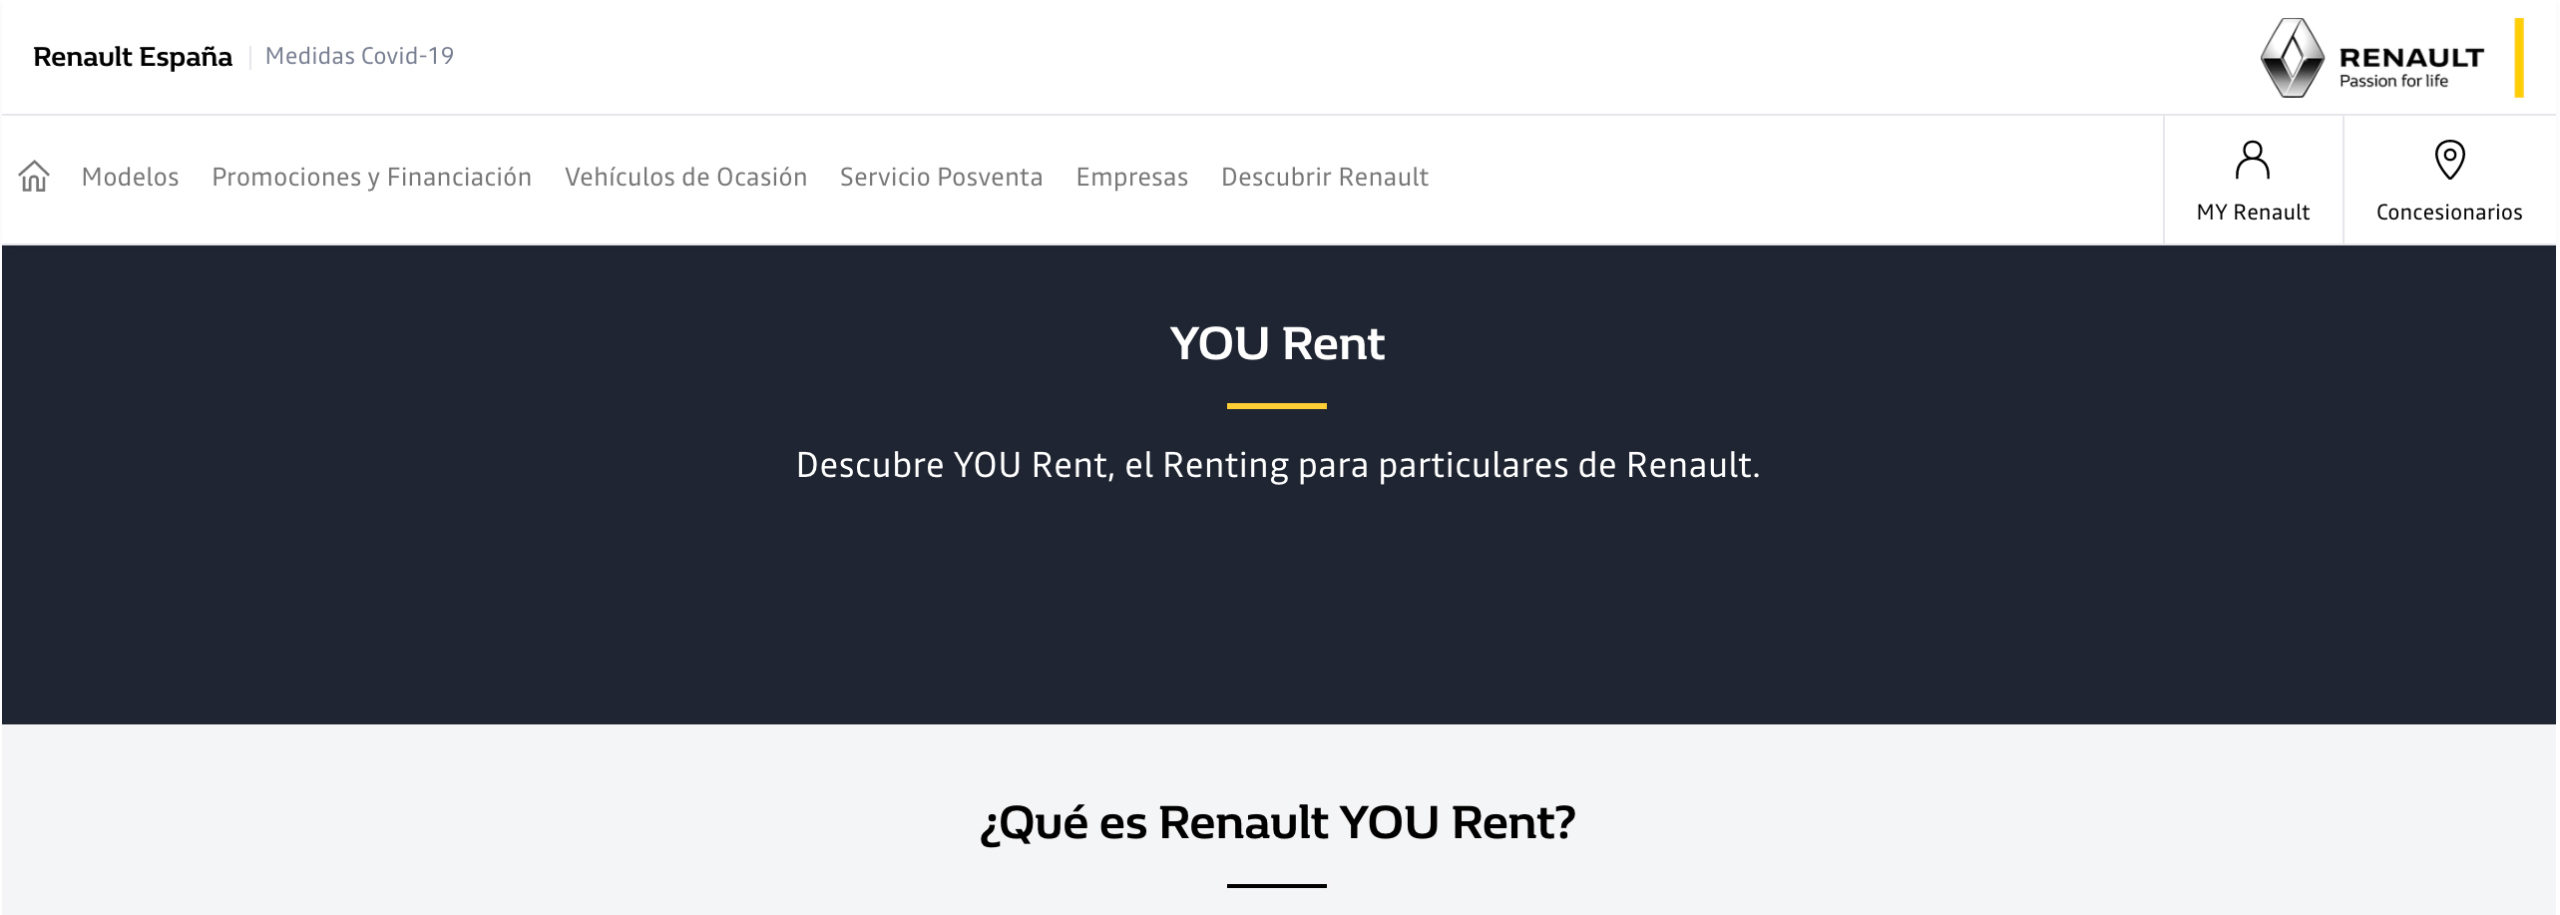 YOU RENT, el Renting de Particulares de Renault